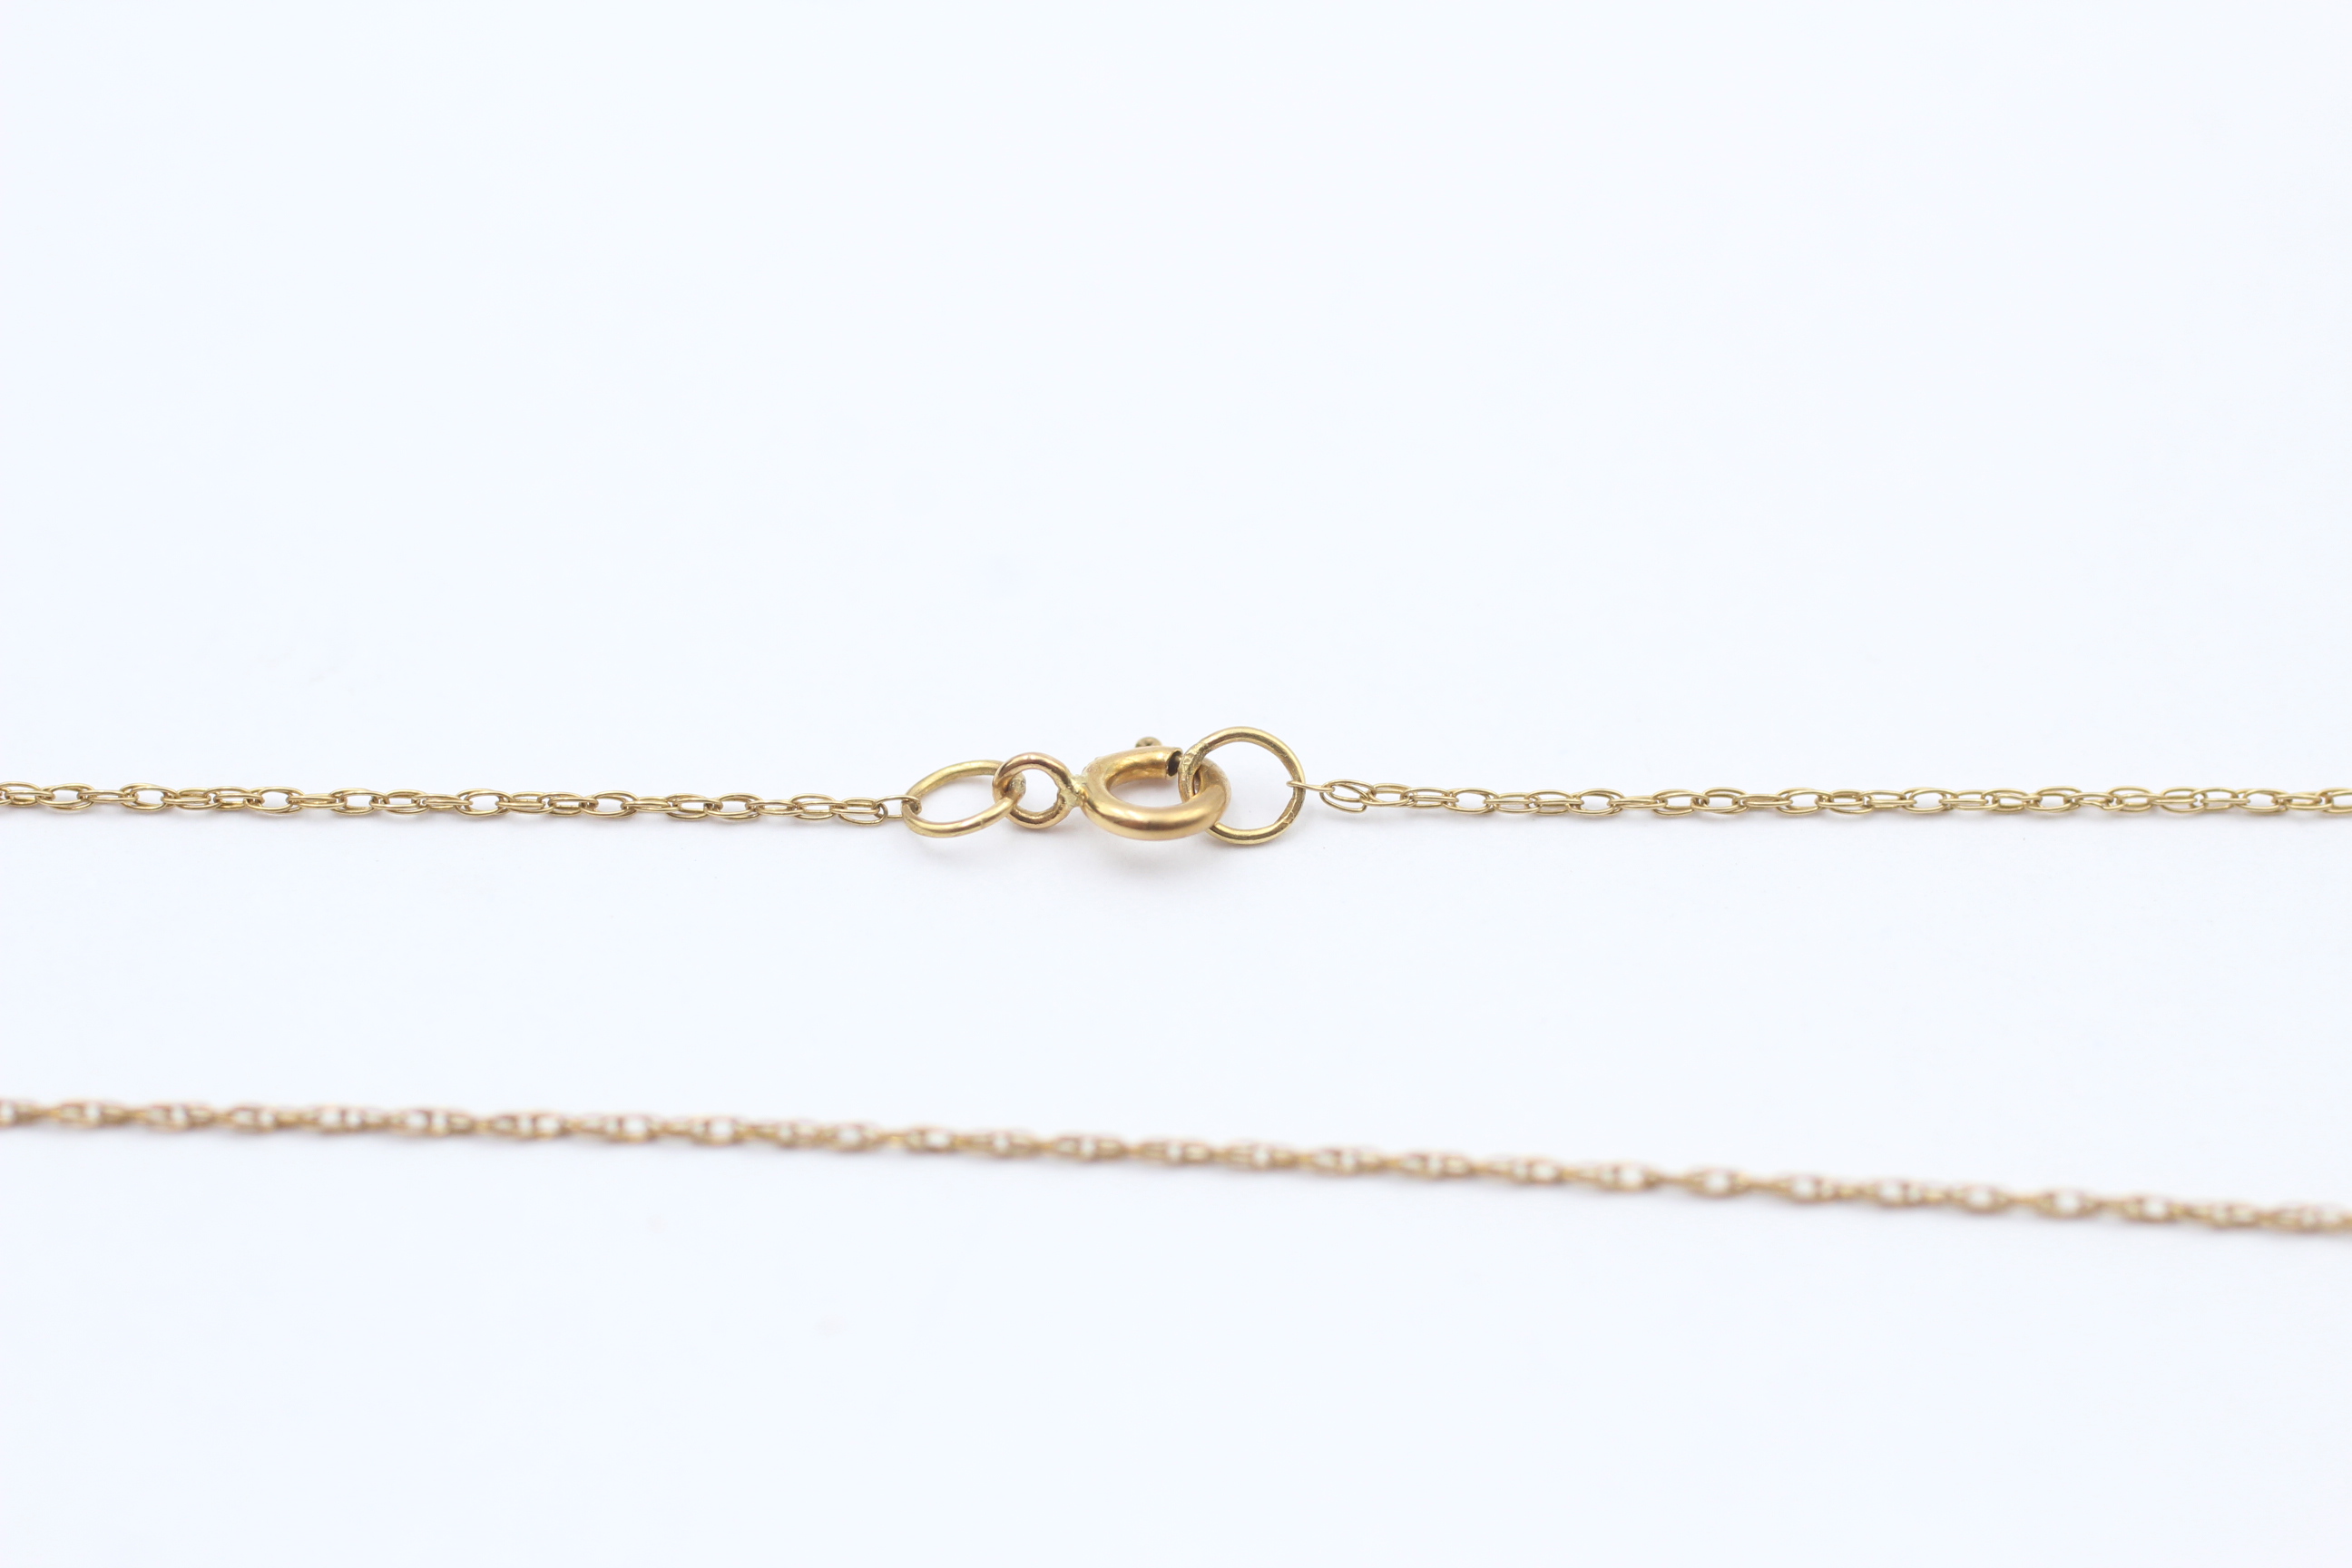 9ct Gold Garnet Teardrop Cluster Pendant Necklace - Image 5 of 5